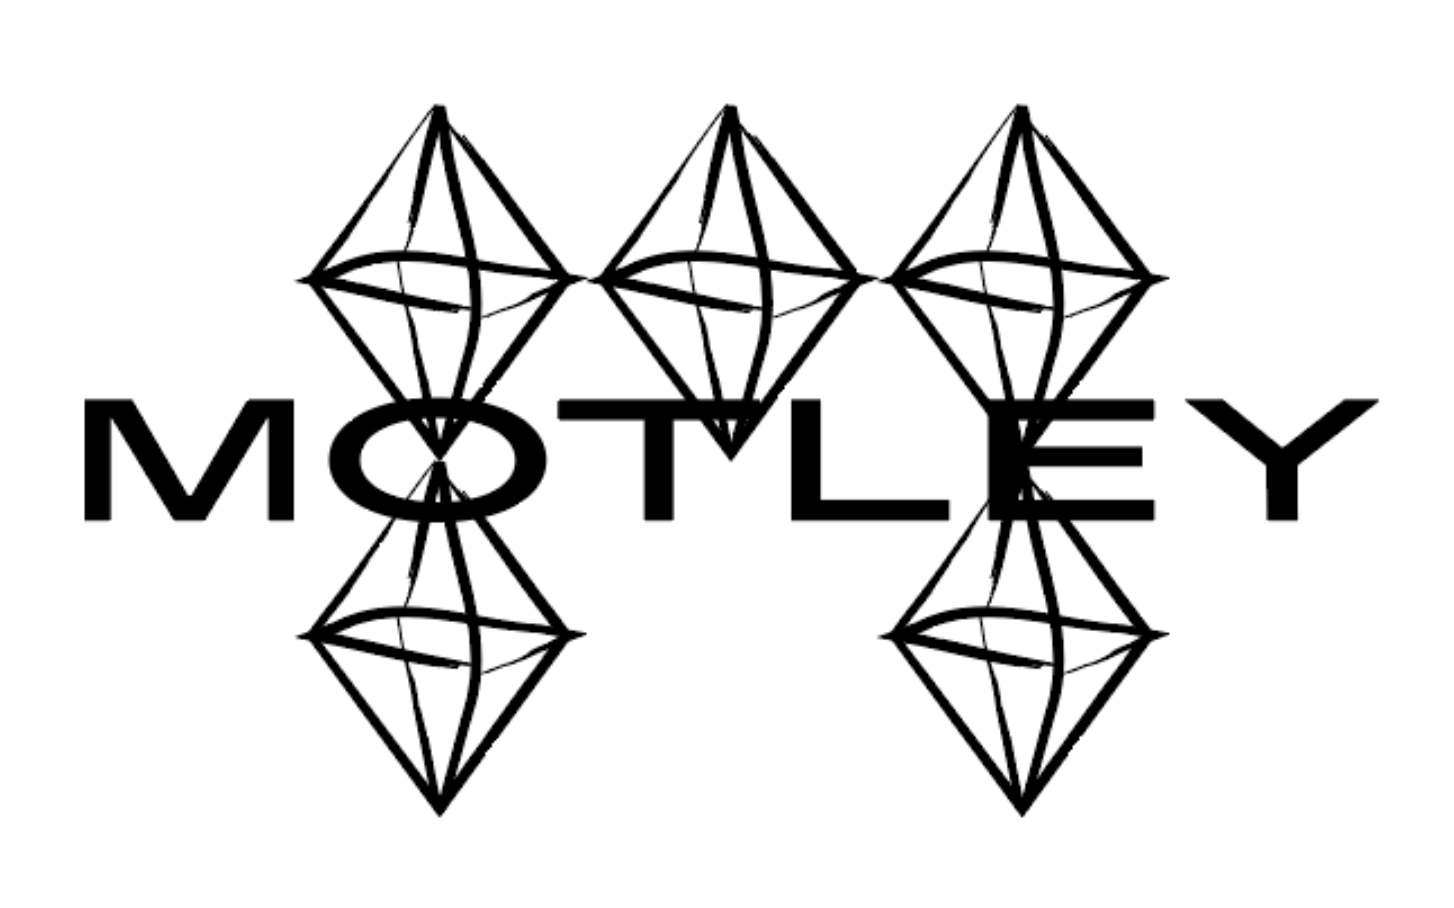 Motley logo 2020